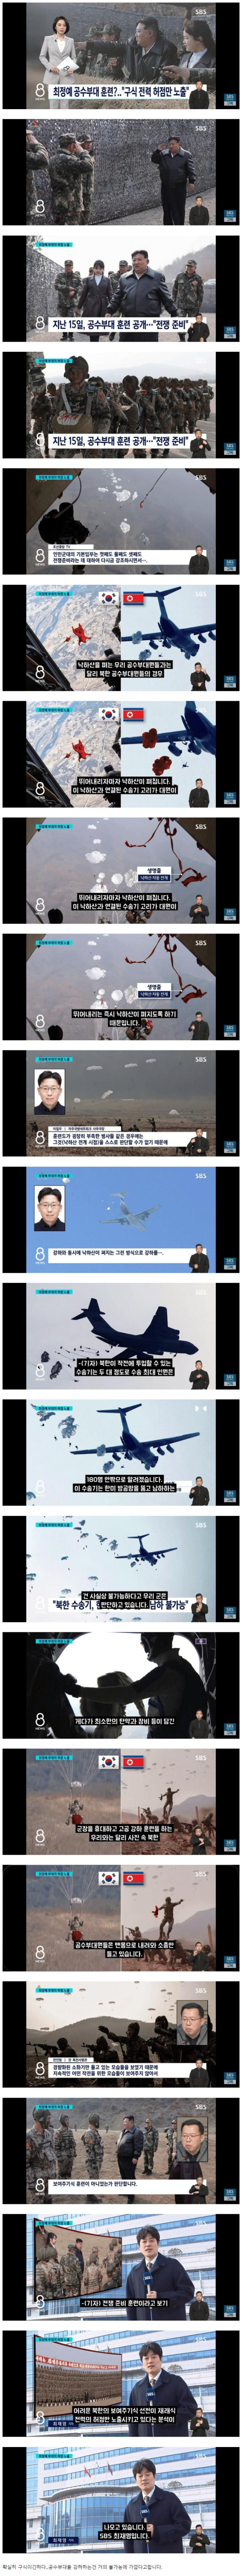 북한 최정예 공수부대 훈련.jpg